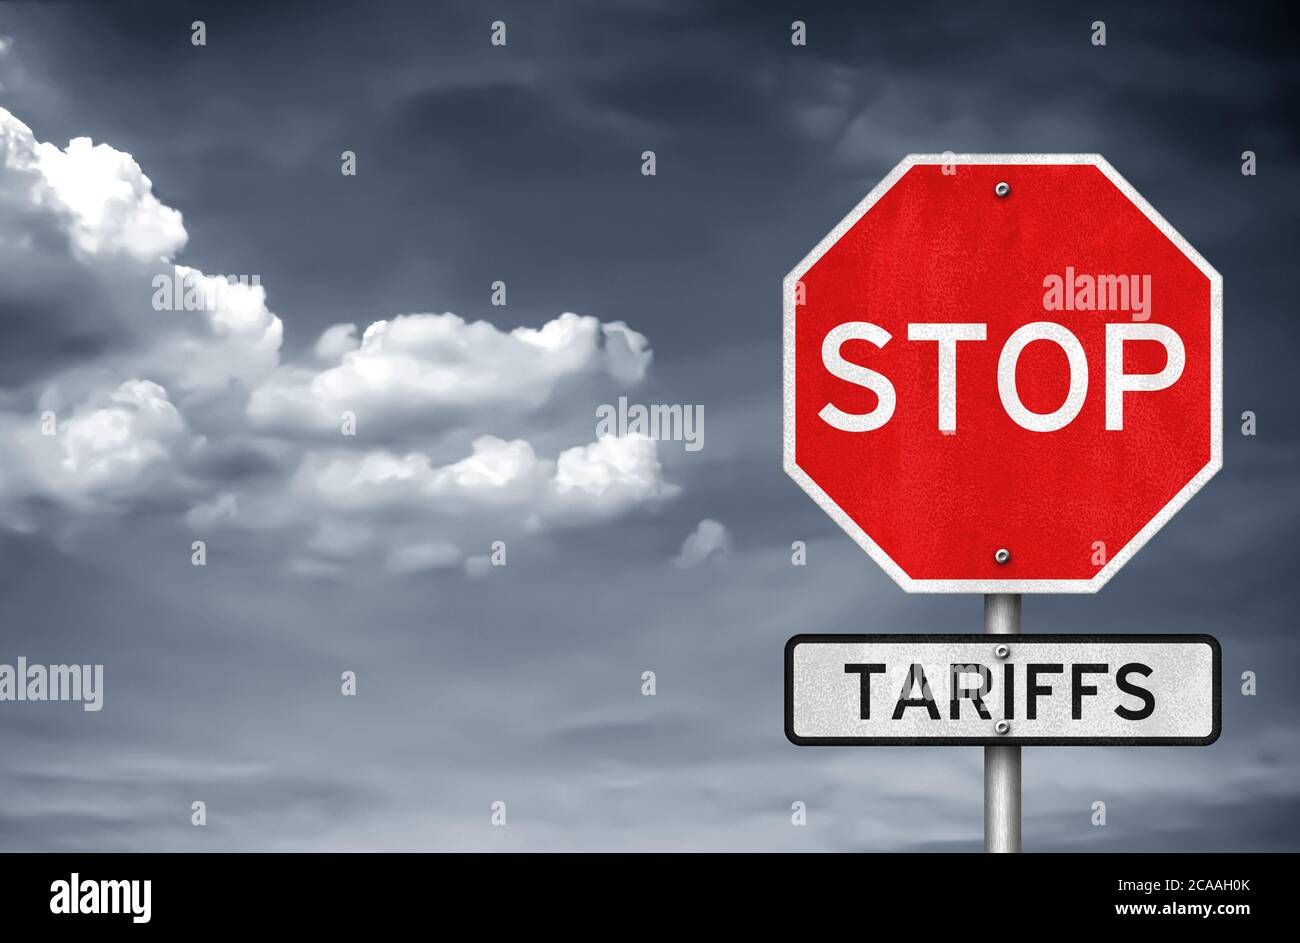 Stop Tariffs Stock Photo